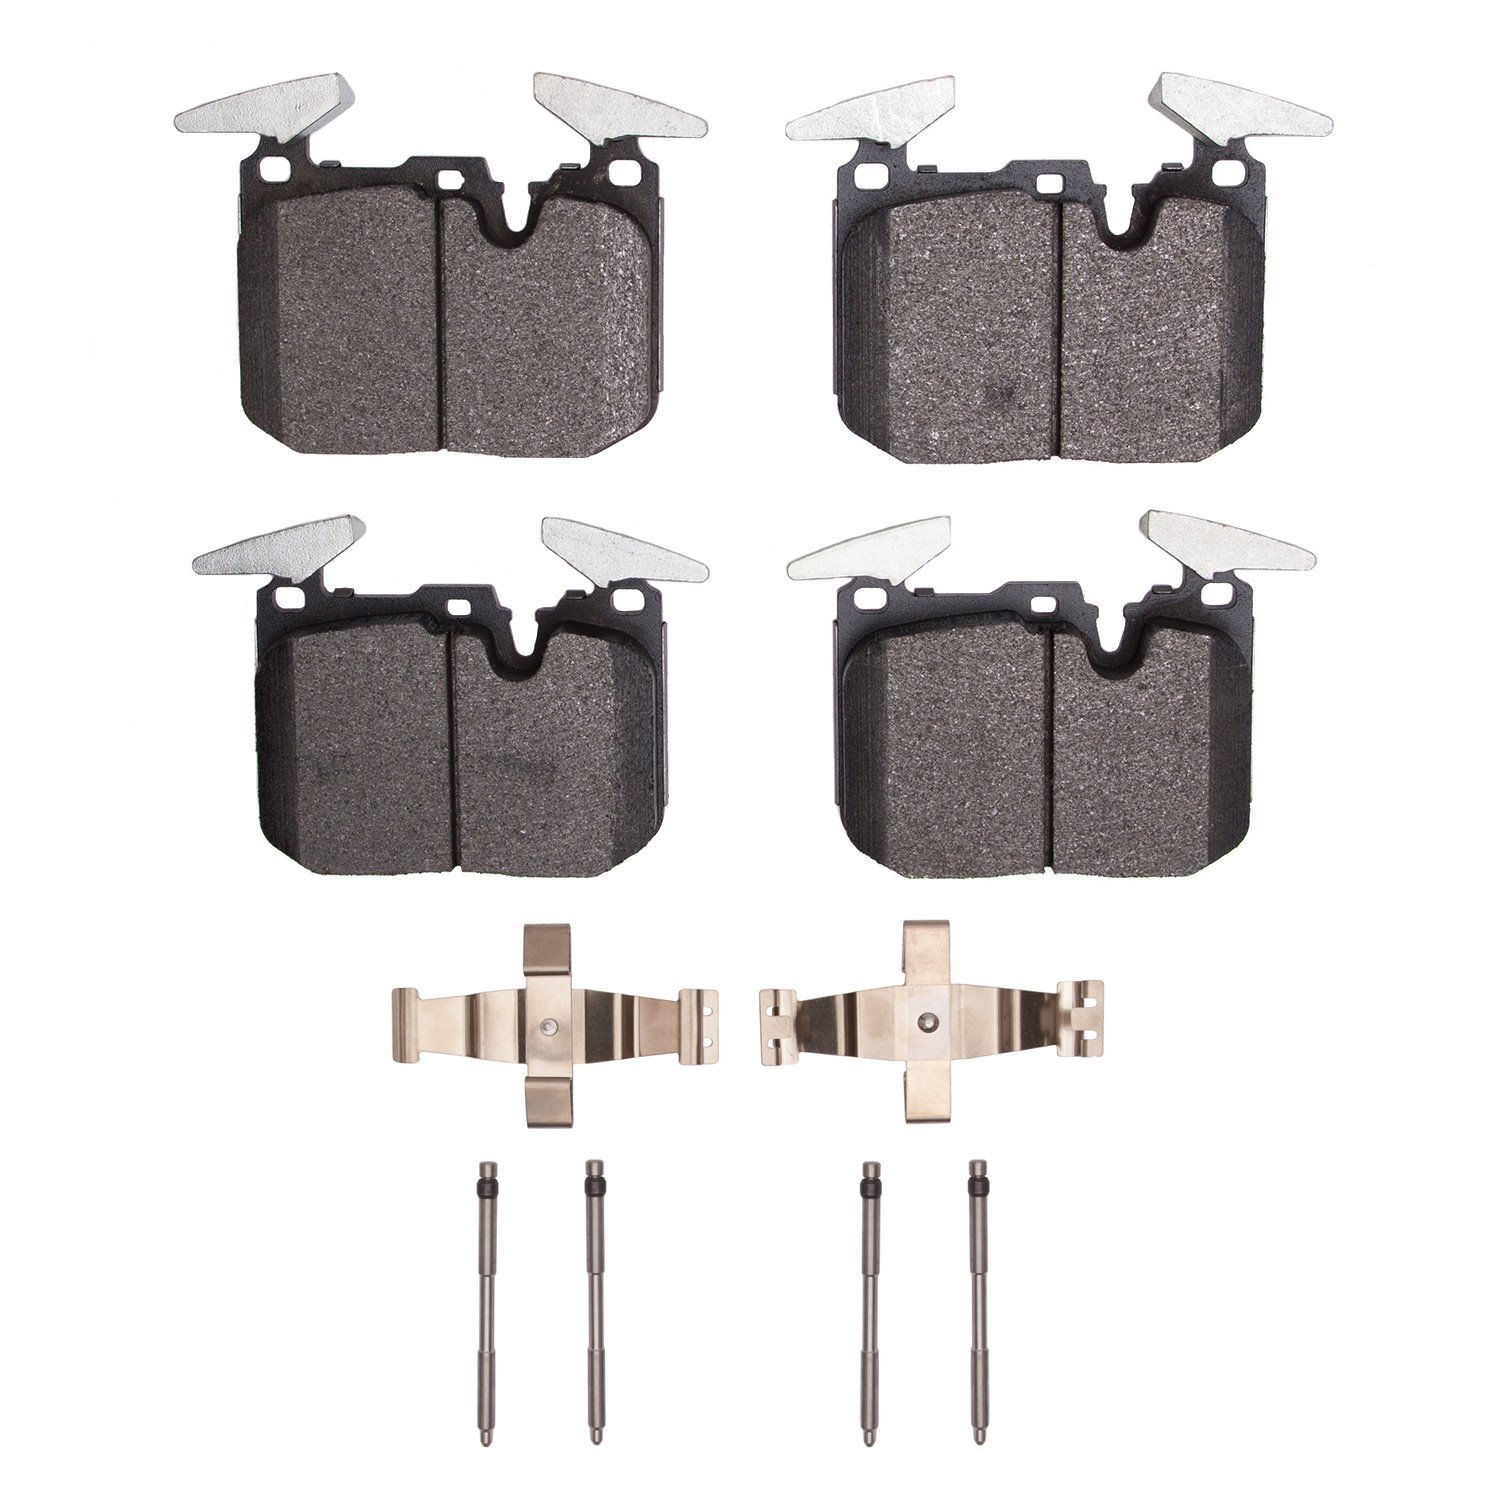 1553-1609-01 5000 Advanced Low-Metallic Brake Pads & Hardware Kit, 2015-2020 BMW, Position: Front